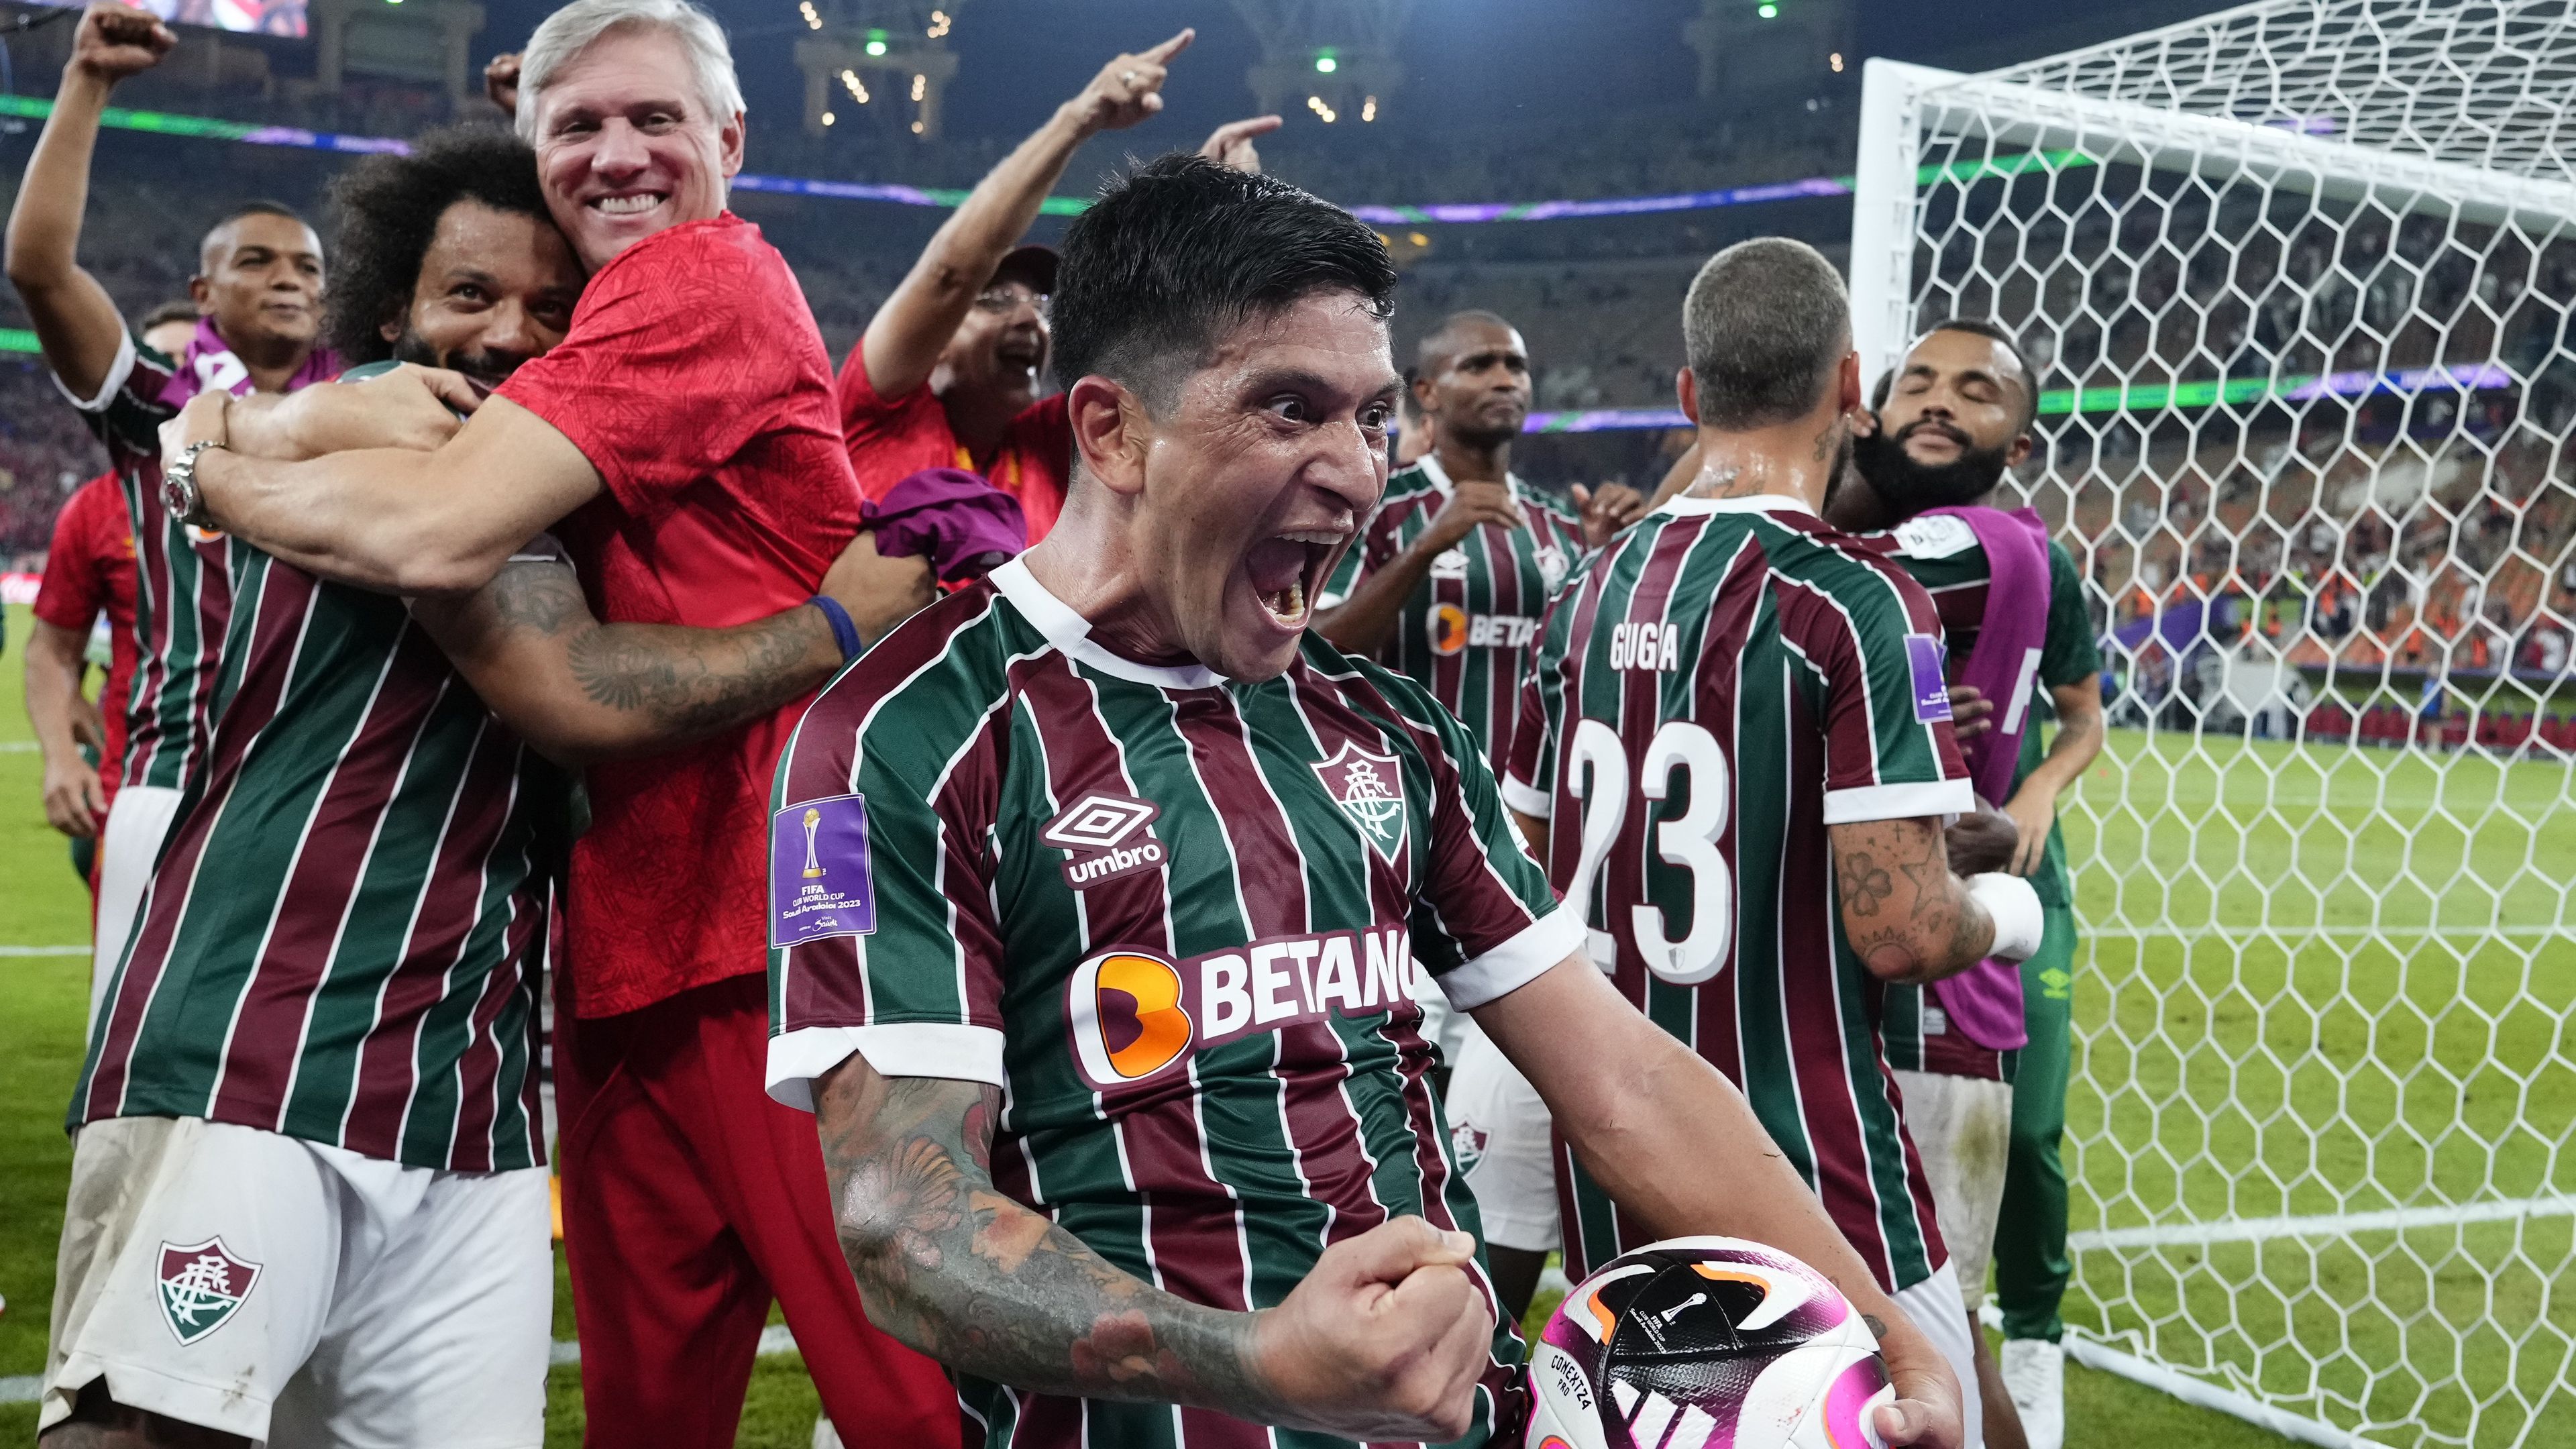 A brazil együttes a második félidőben kétszer is betalált, és a játékosok, köztük Marcelo (balra) joggal örülhettek a mérkőzés végén. (Fotó: Getty Images)